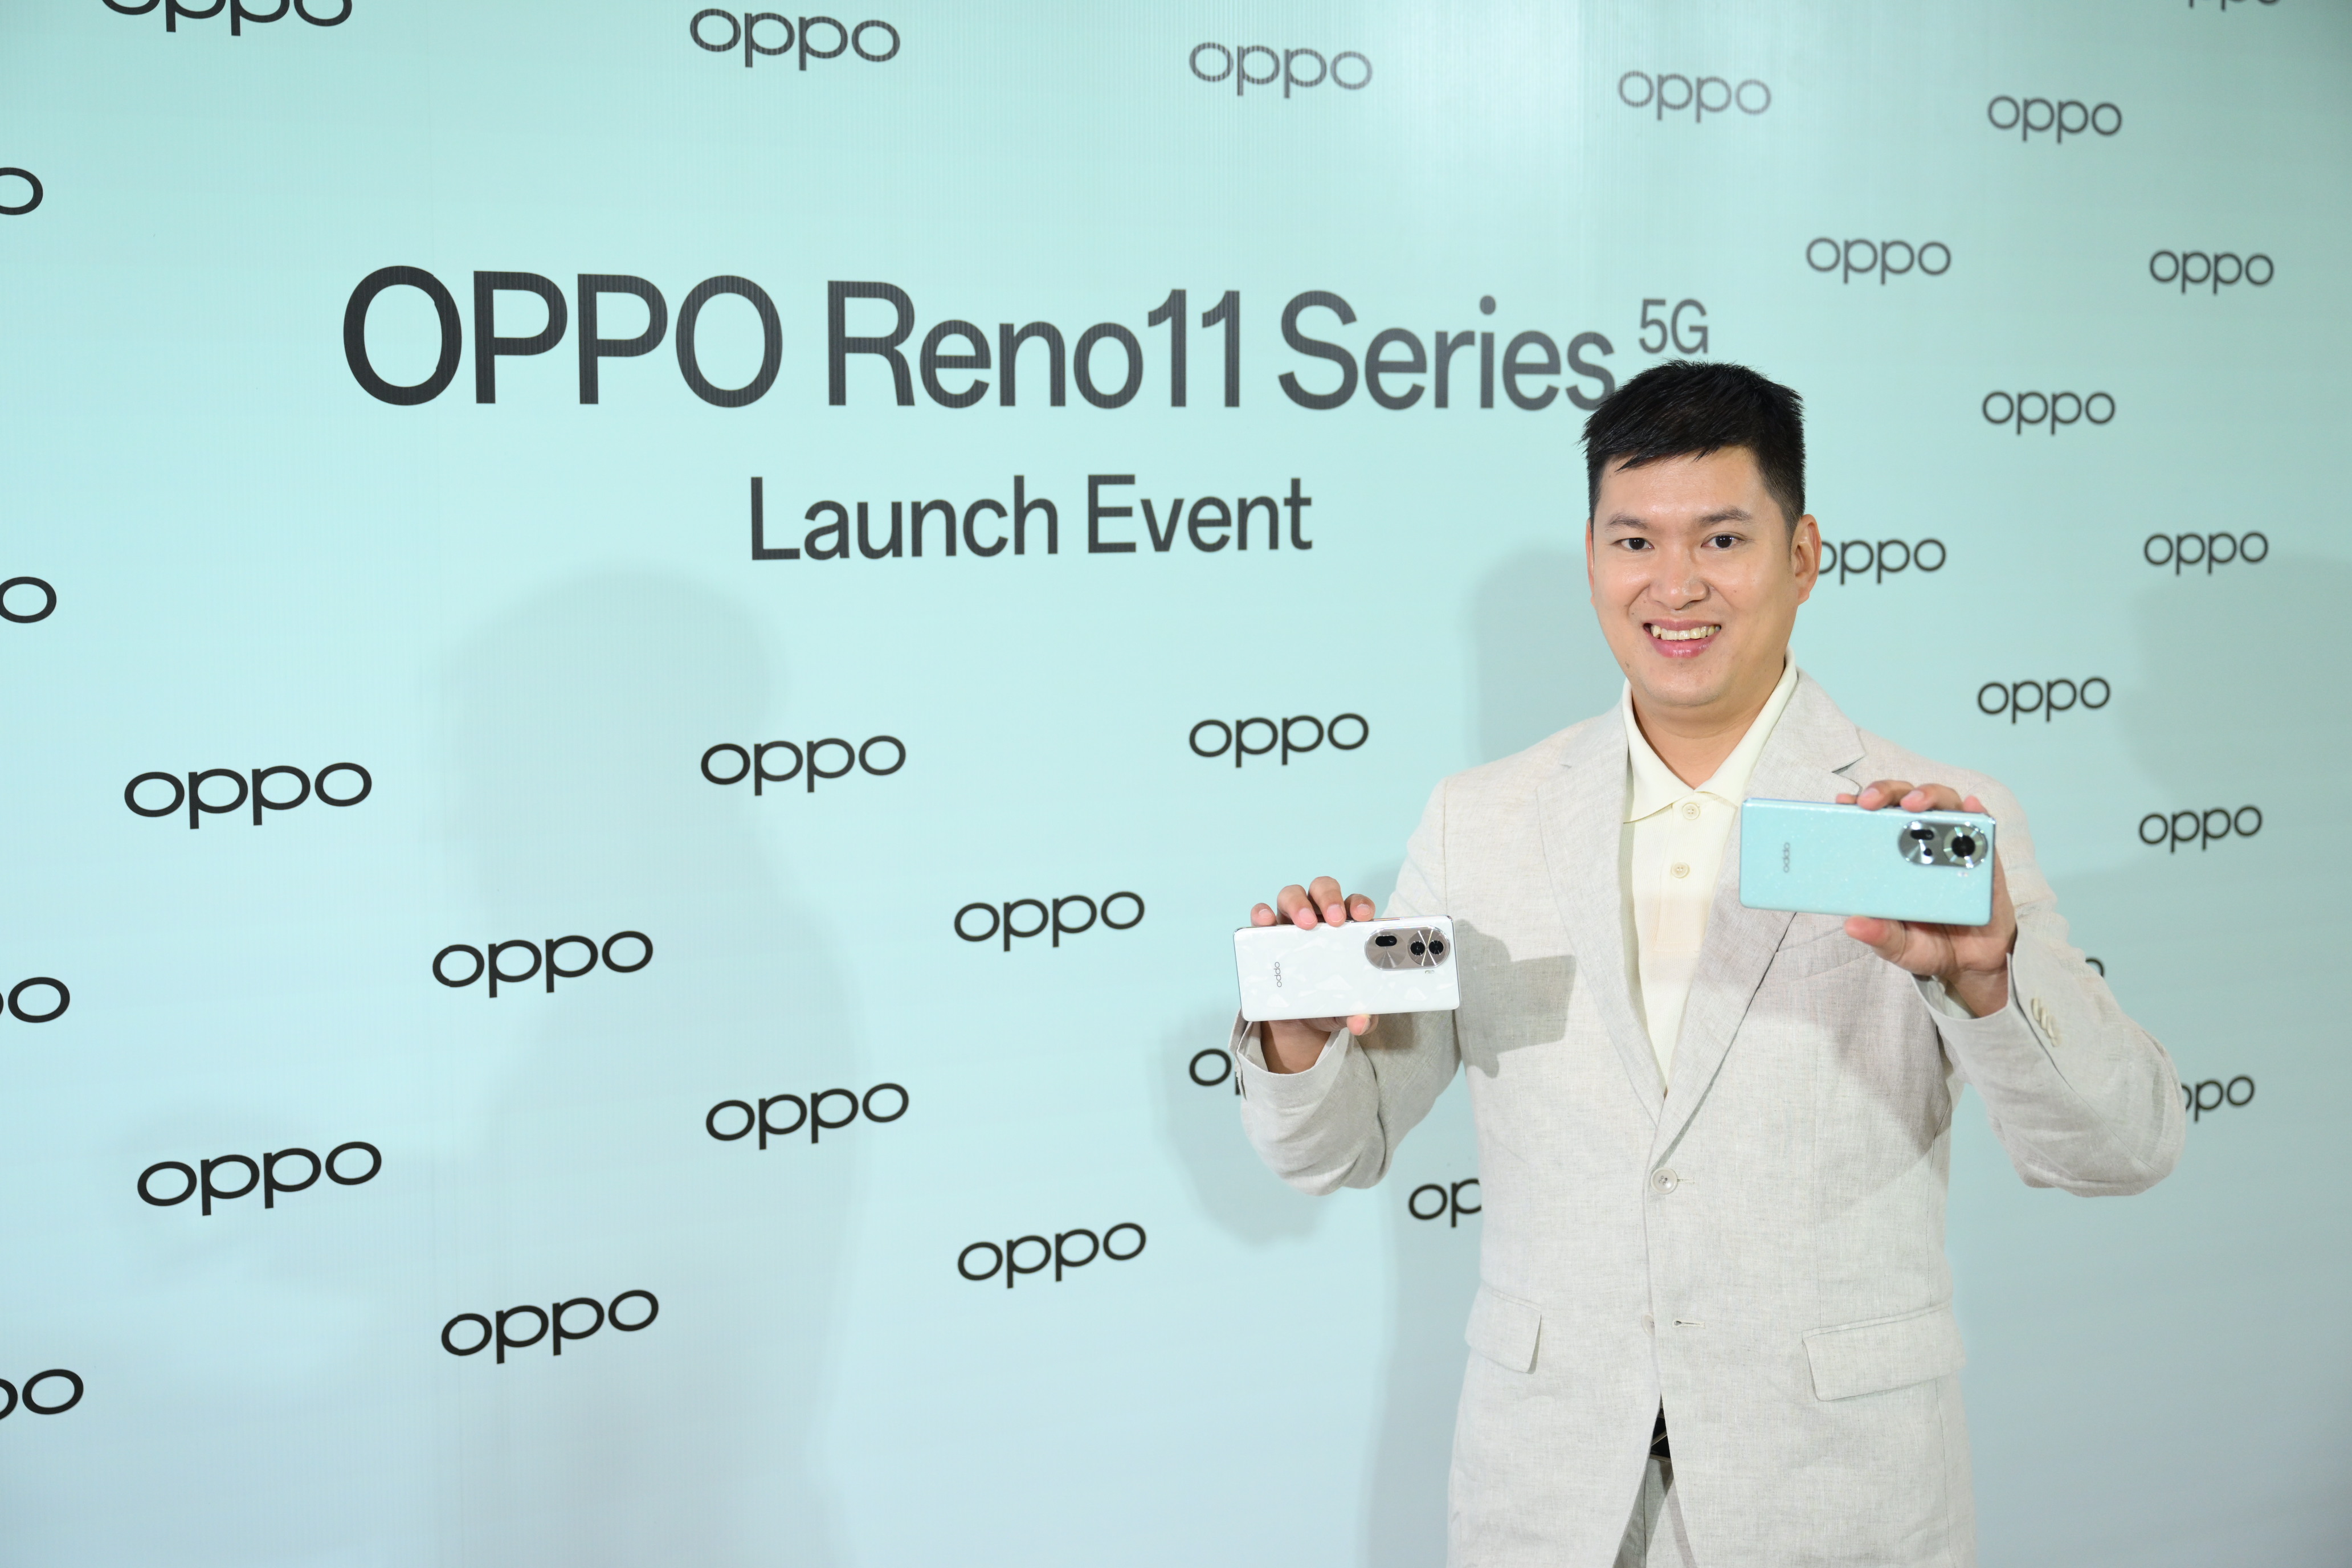 ออปโป้ ส่ง 'OPPO Reno11 Series 5G' รุ่นใหม่ สมาร์ตโฟนถ่ายคนอย่างโปร